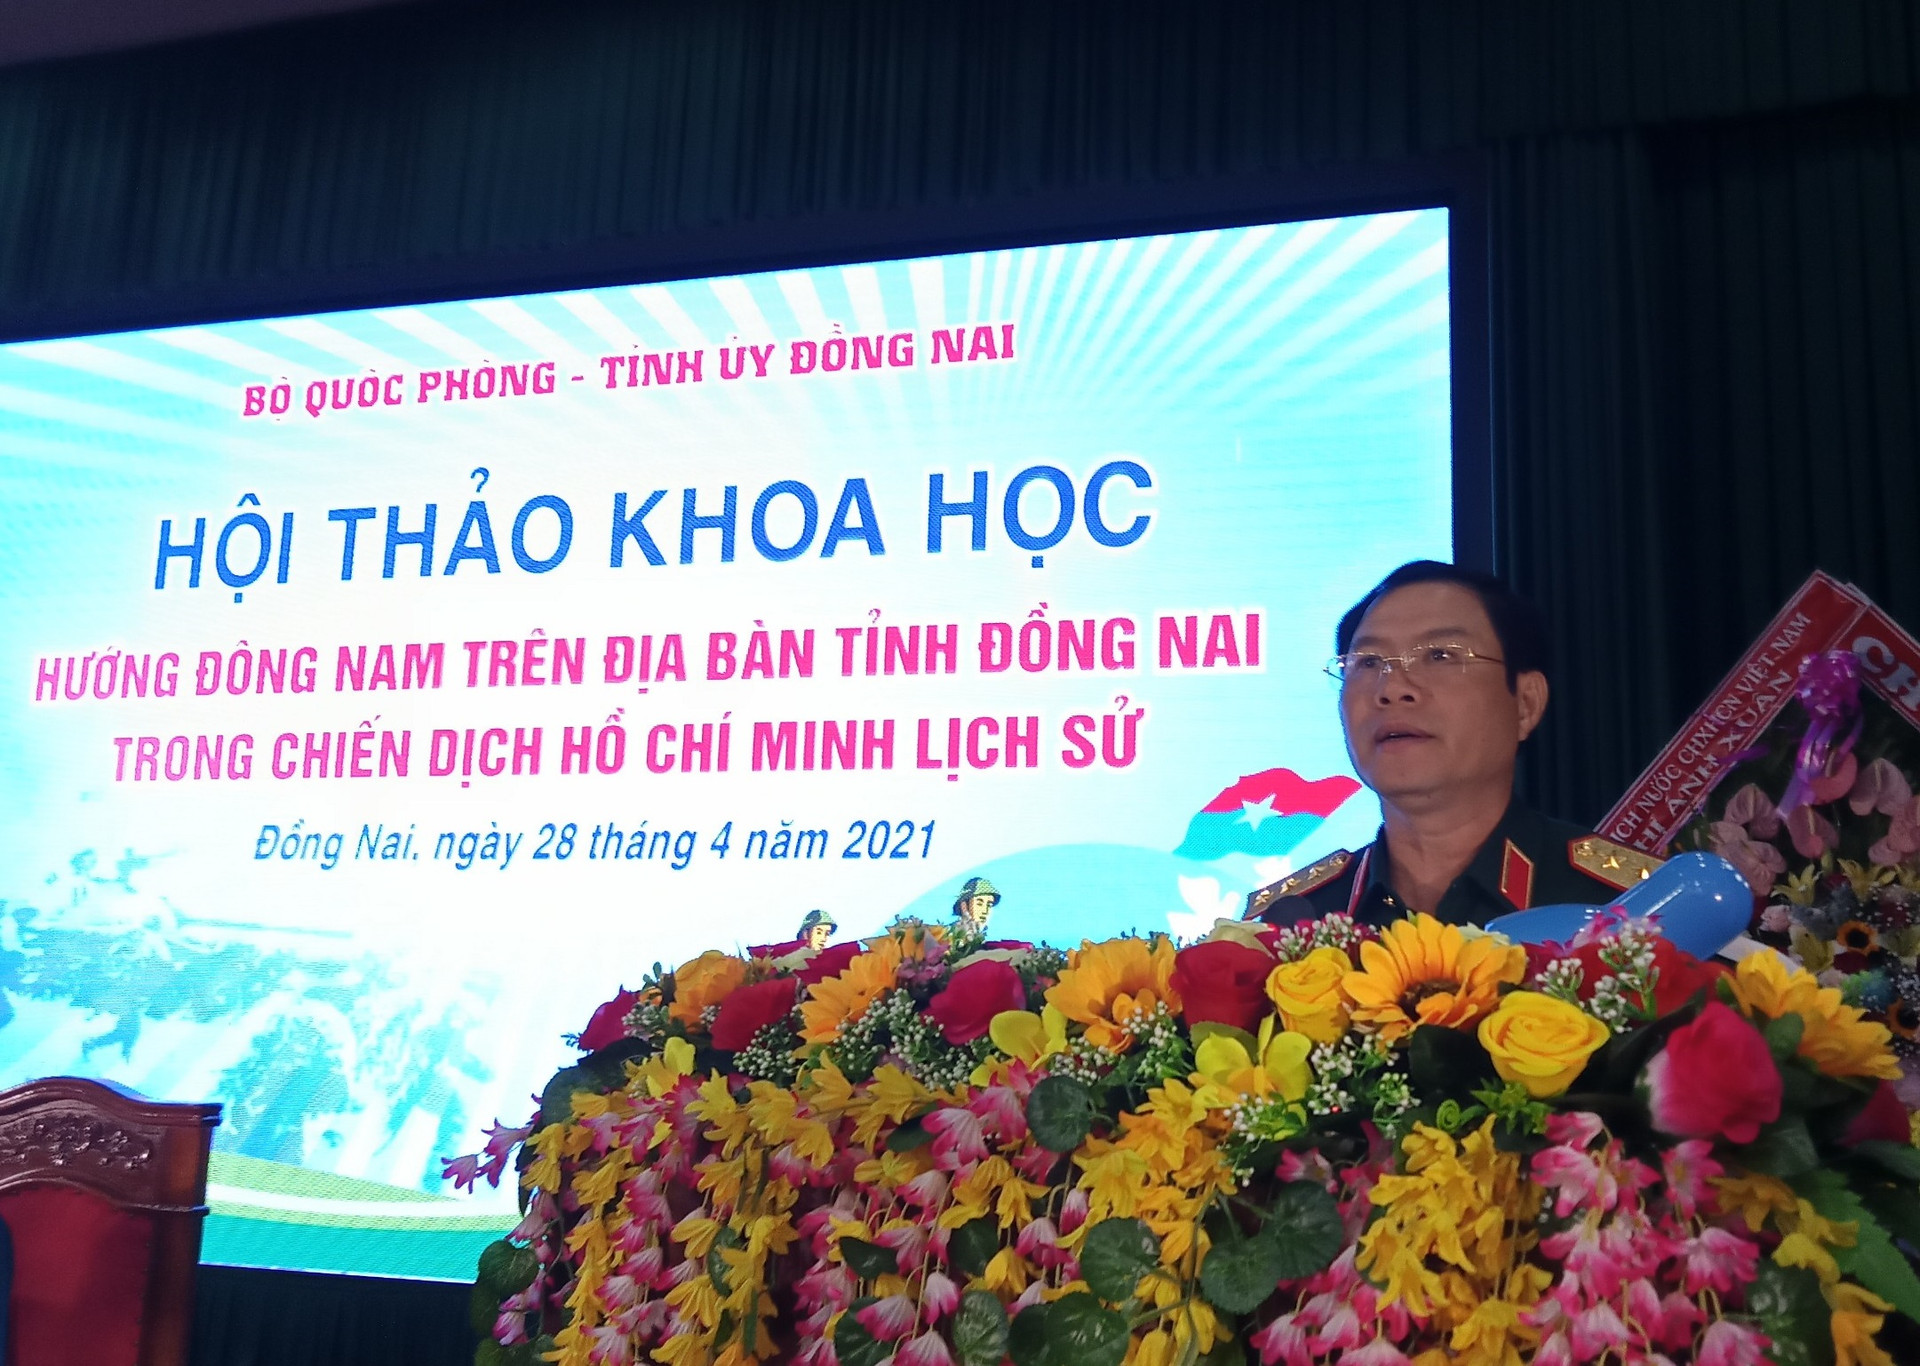 Thượng tướng Nguyễn Tân Cương - Ủy viên Ban Chấp hành Trung ương Đảng, Ủy viên Quân ủy Trung ương, Thứ trưởng Bộ Quốc phòng phát biểu khai mạc hội thảo.